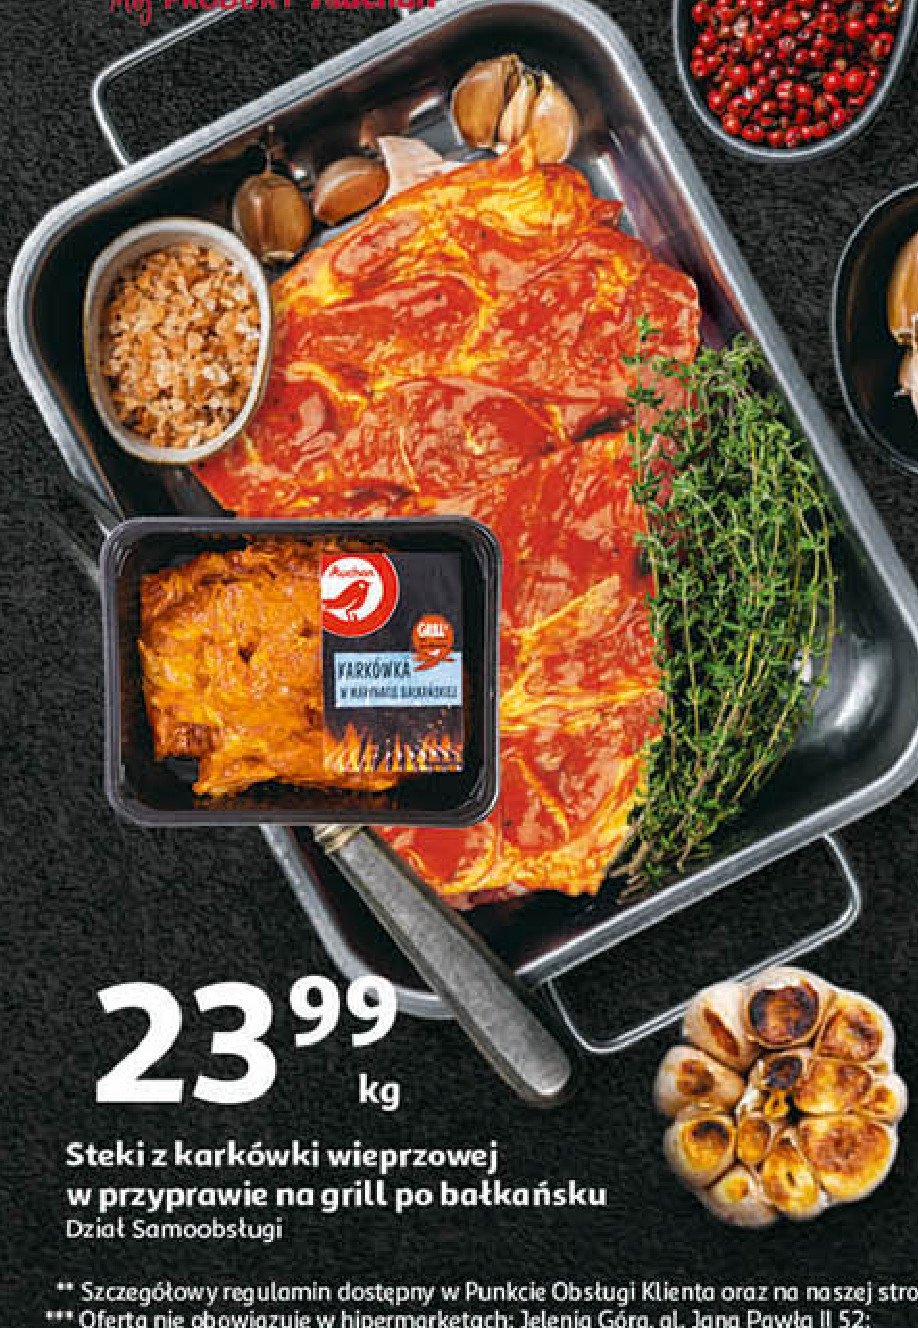 Stek z karkówki wieprzowej po bałkańsku Auchan różnorodne (logo czerwone) promocja